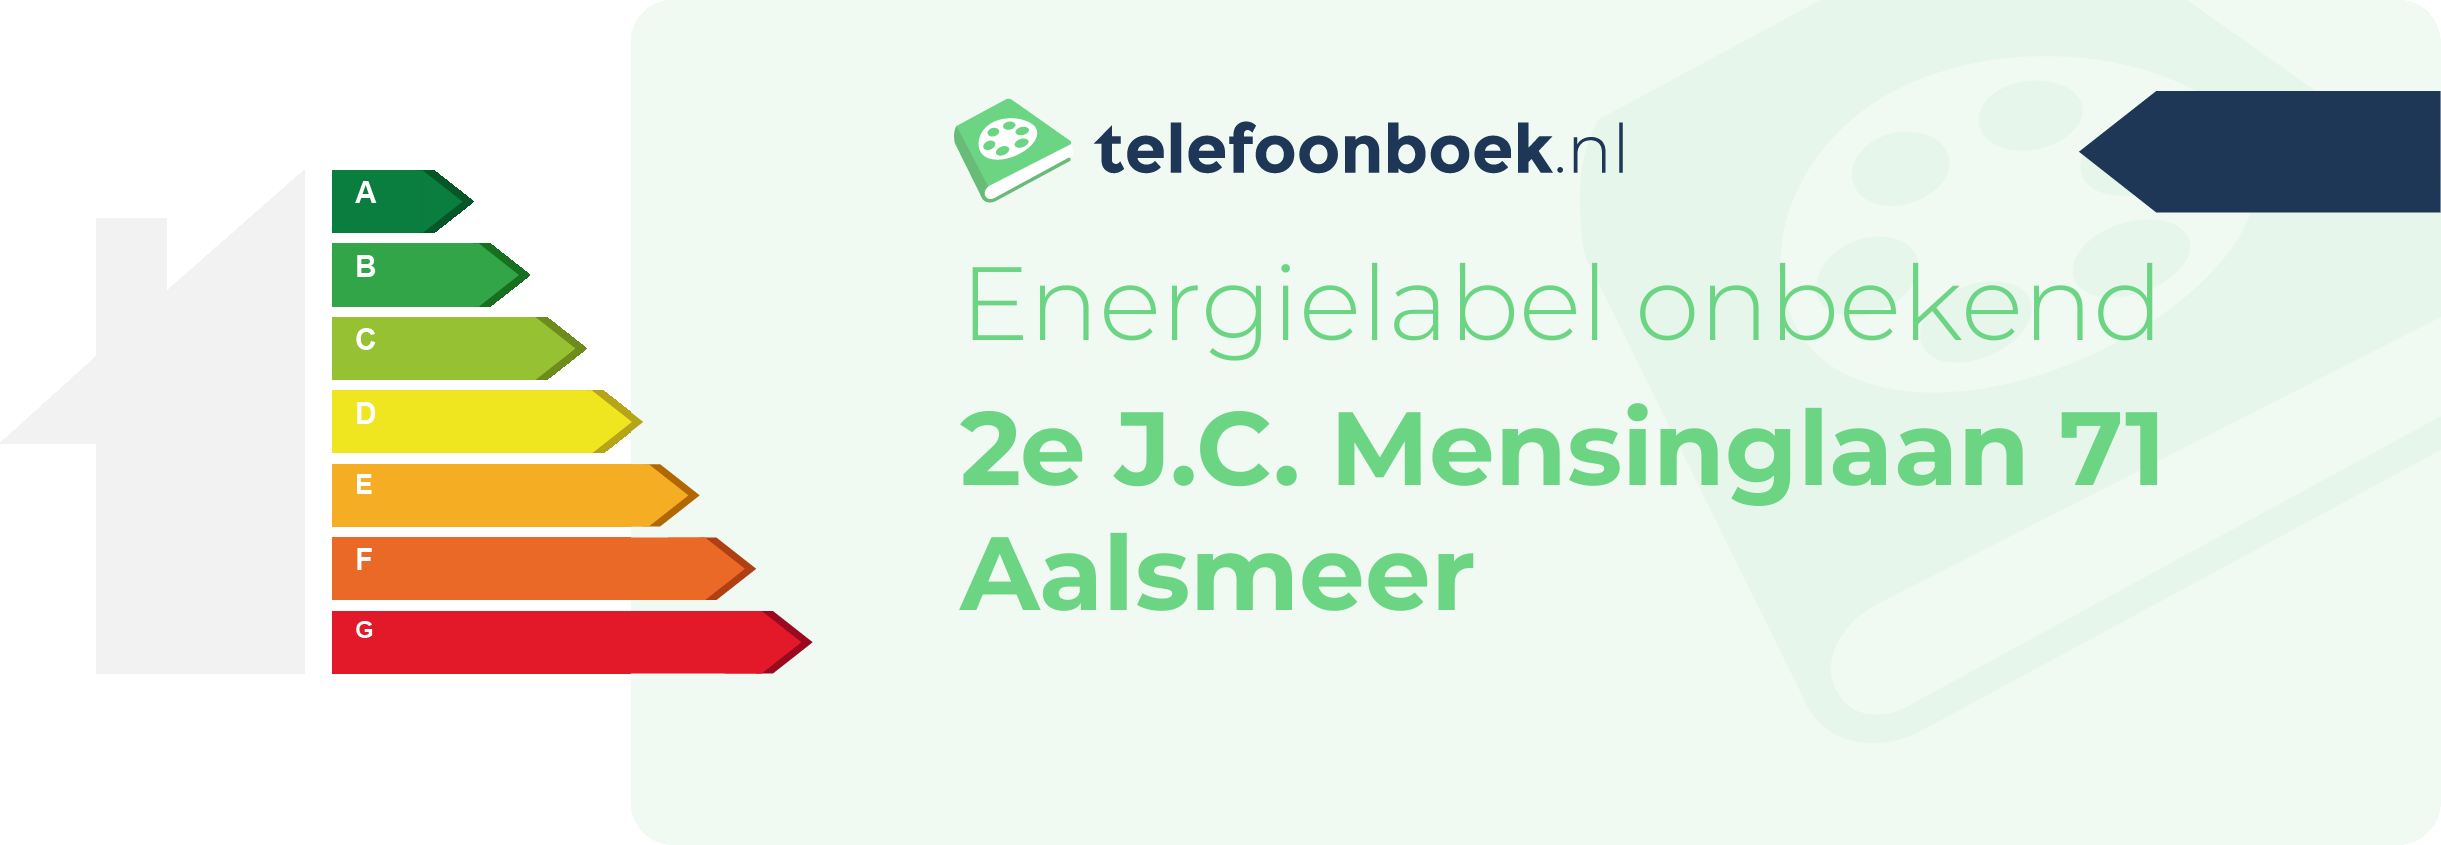 Energielabel 2e J.C. Mensinglaan 71 Aalsmeer